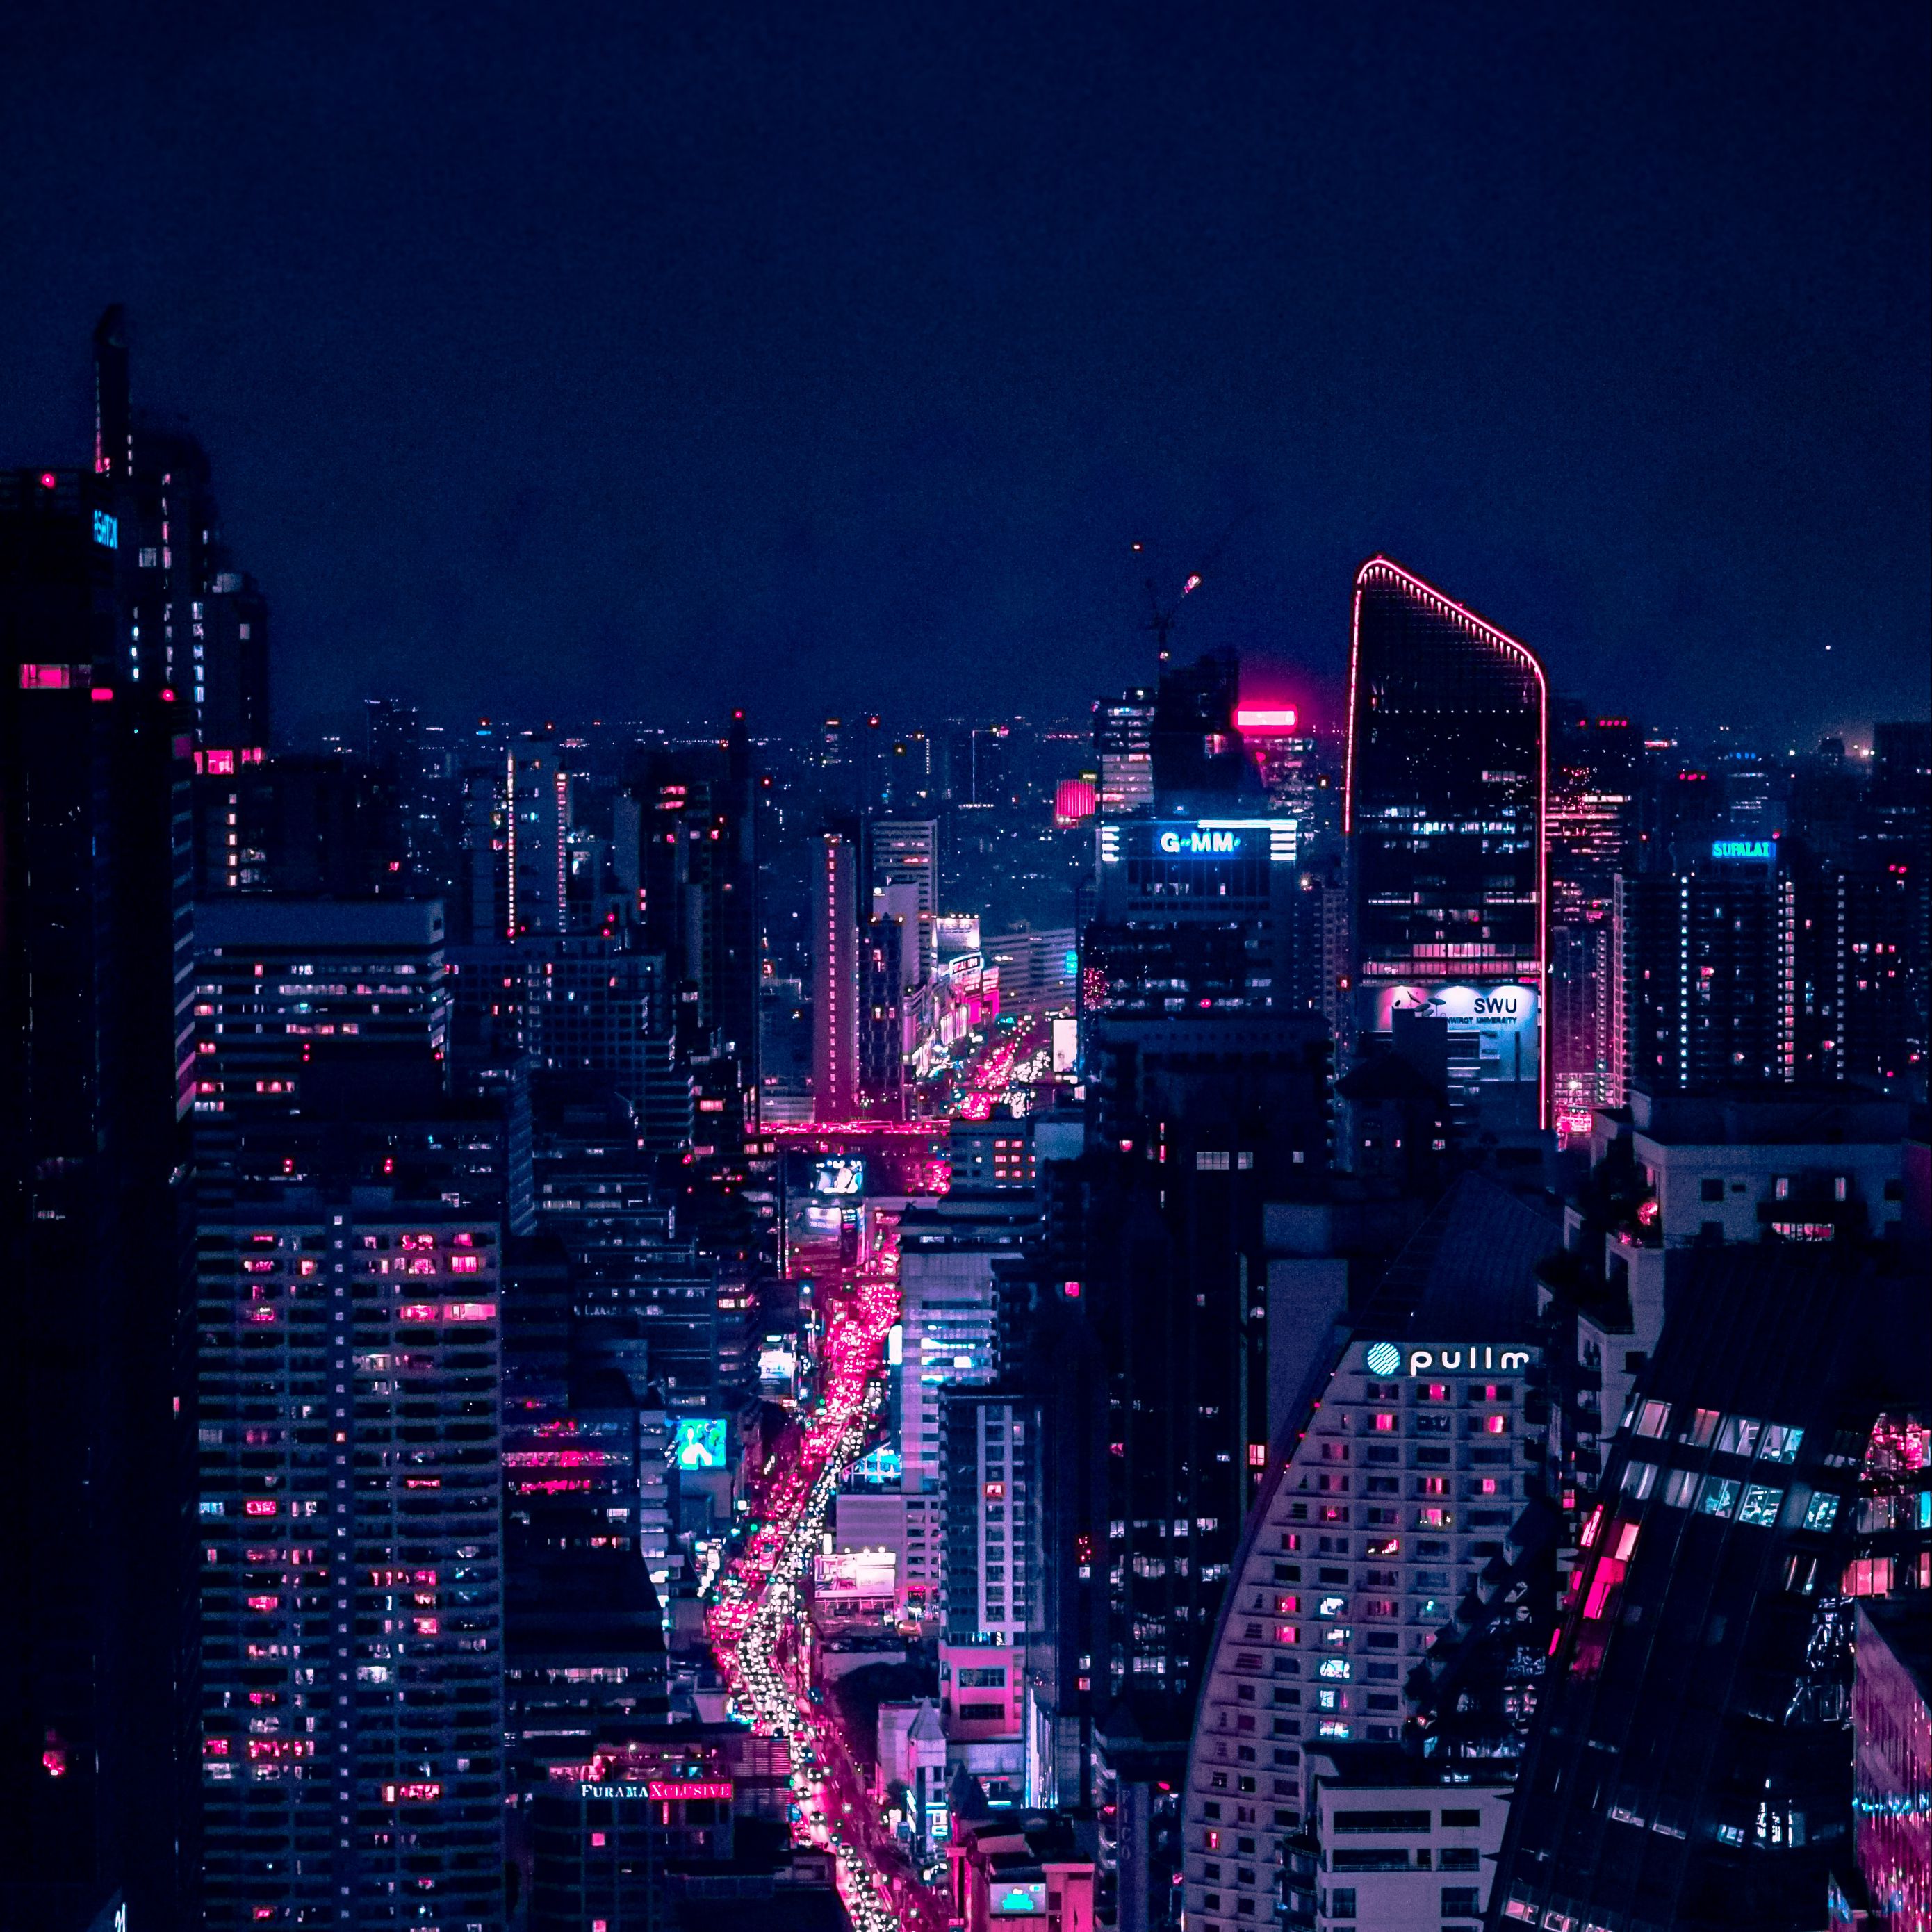 Khám phá những hình ảnh đẹp tuyệt vời của thành phố về đêm. Hãy để màu sắc ánh đèn lung linh của đô thị cùng cảm giác thăng hoa thoảng qua giữa hơi lạnh của màn đêm chinh phục trái tim bạn.